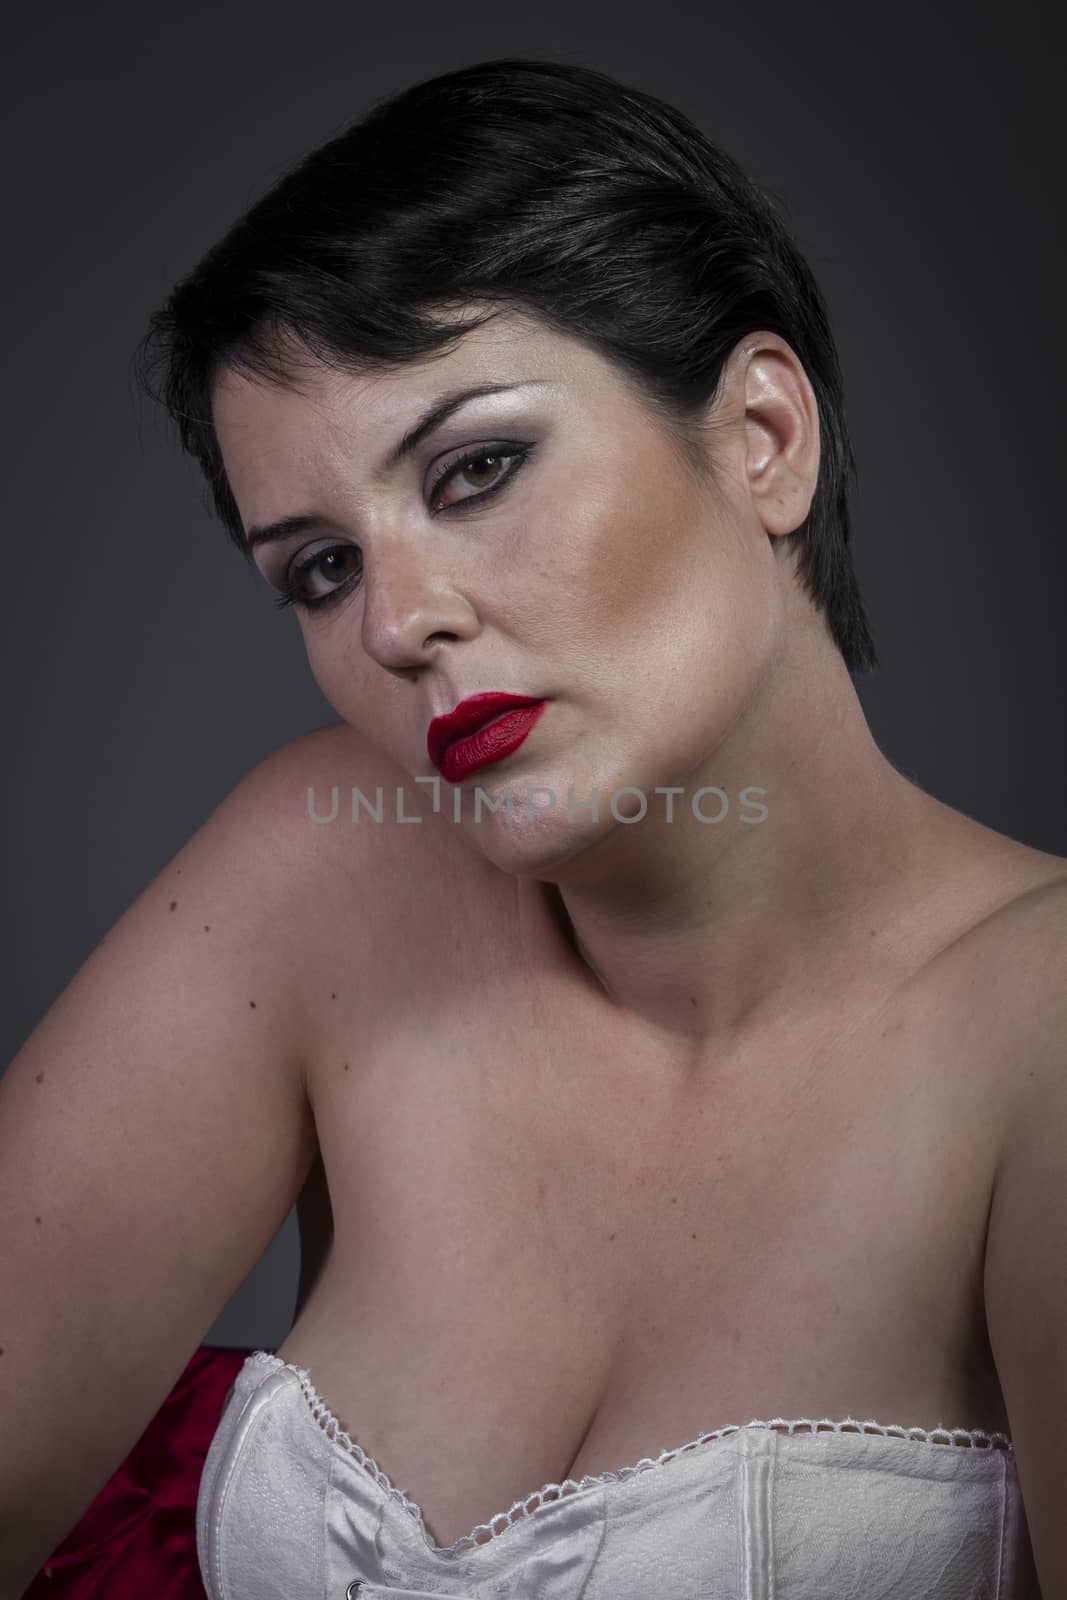 Fashion, Sensual brunette in lingerie, beauty model by FernandoCortes